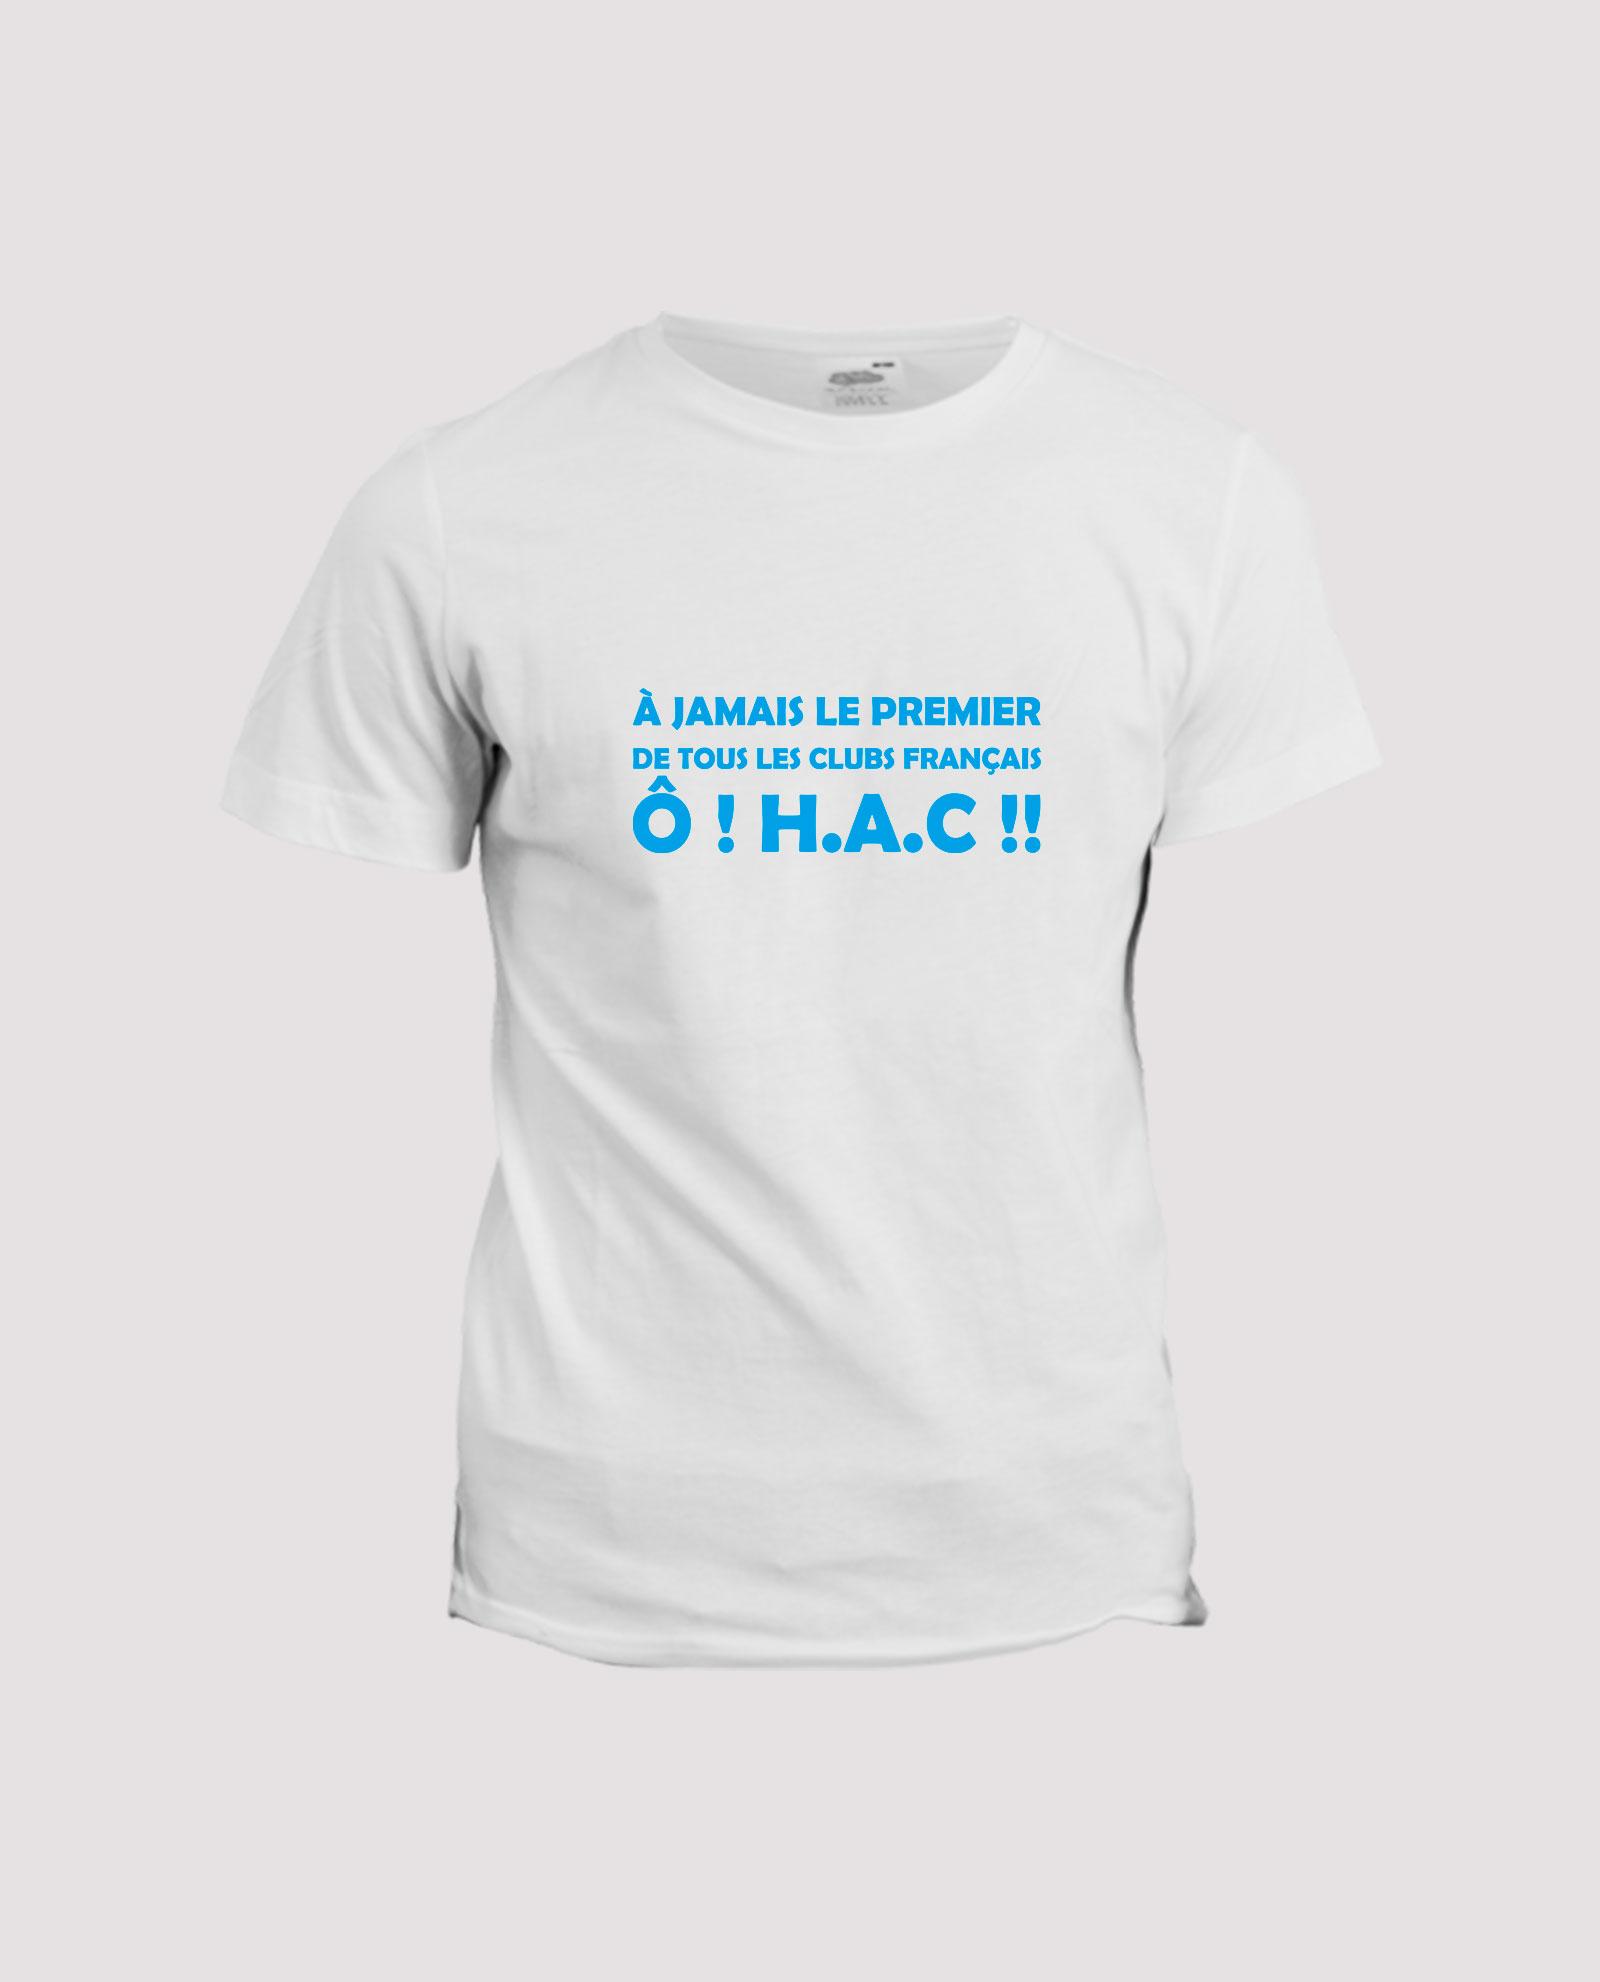 la-ligne-shop-t-shirt-football-club-le-havre-a-jamais-le-premier-de-tous-les-clubs-francais-HAC-h-a-c-blanc